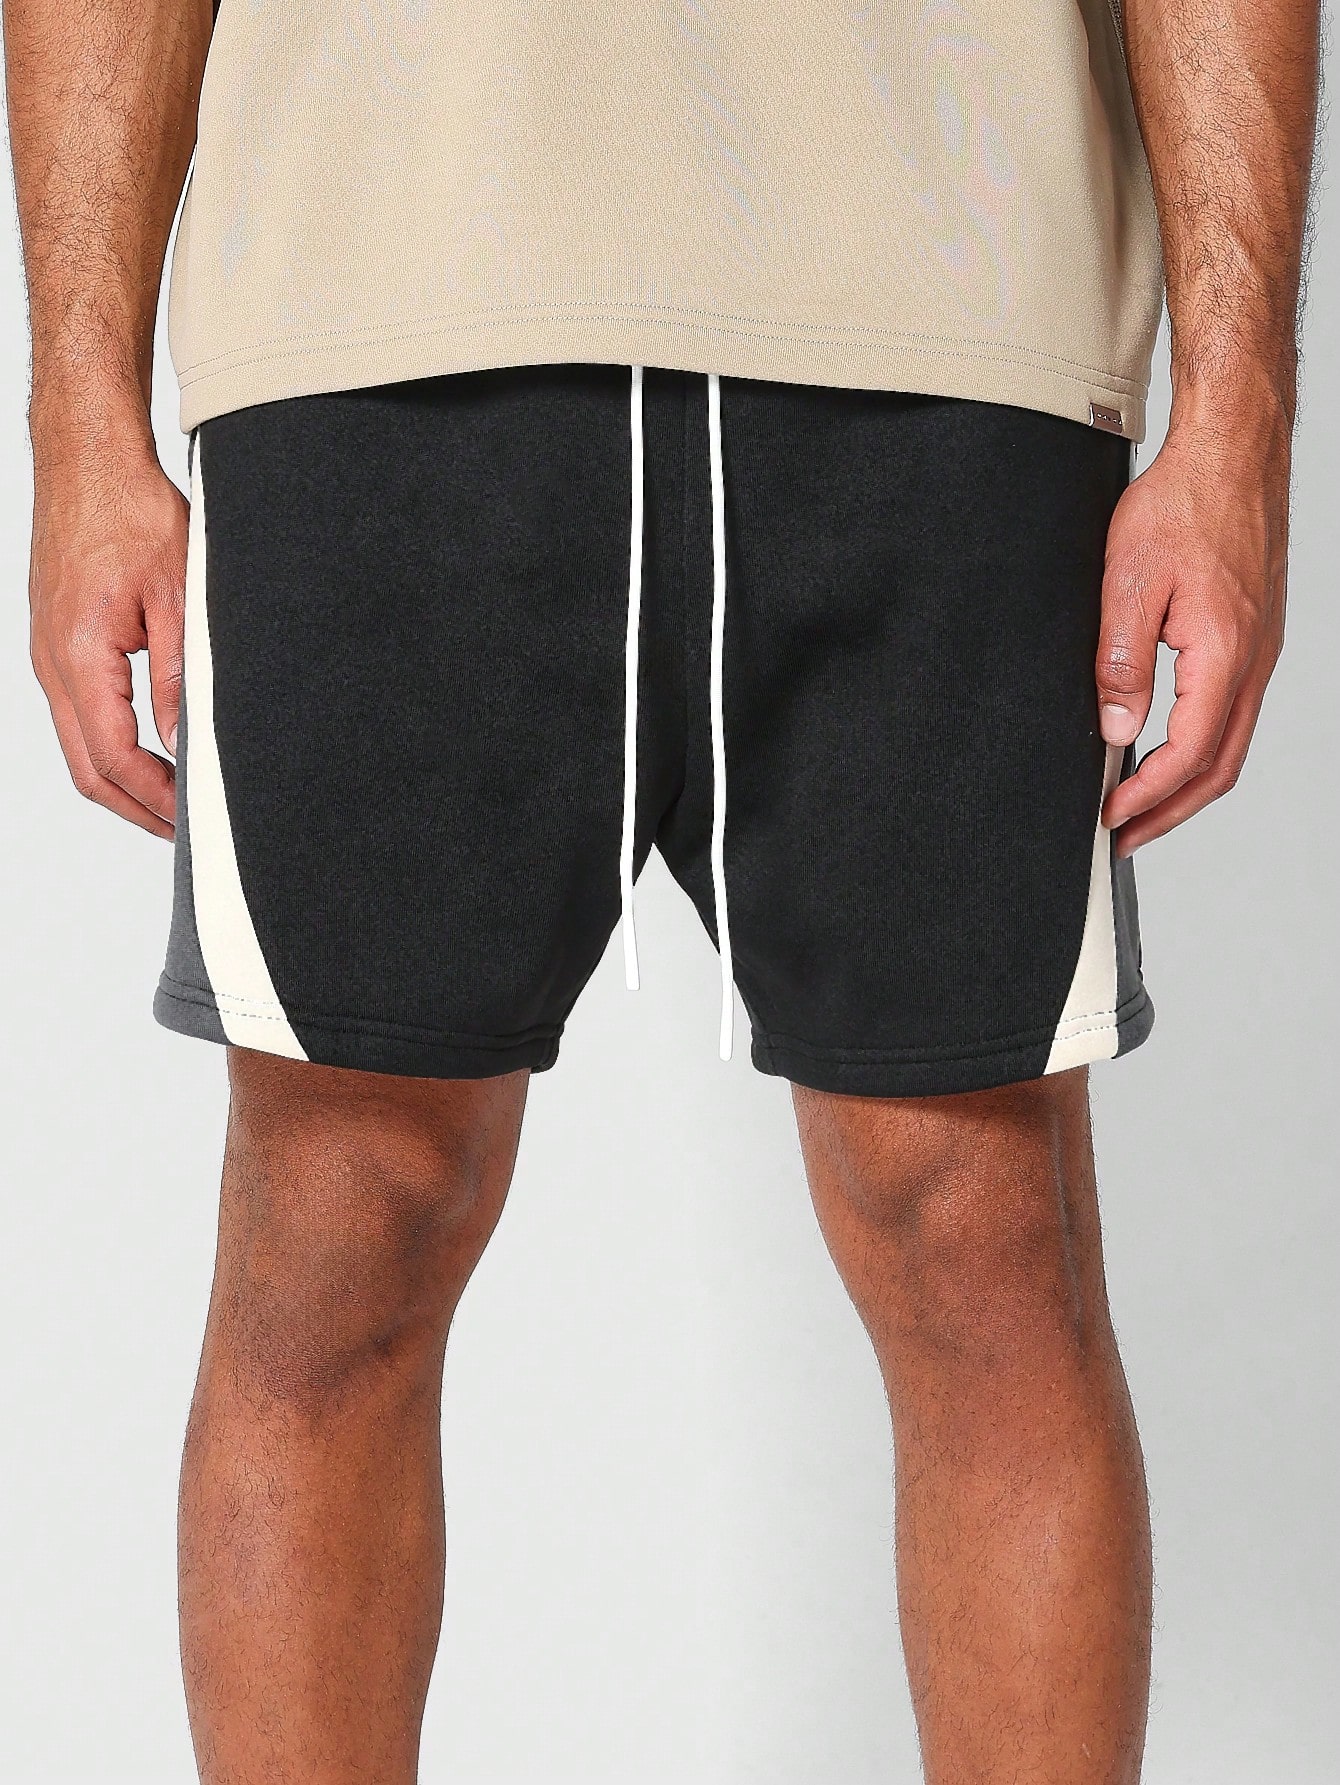 short SUMWON Короткие шорты с заниженным шаговым швом и контрастными вставками, многоцветный